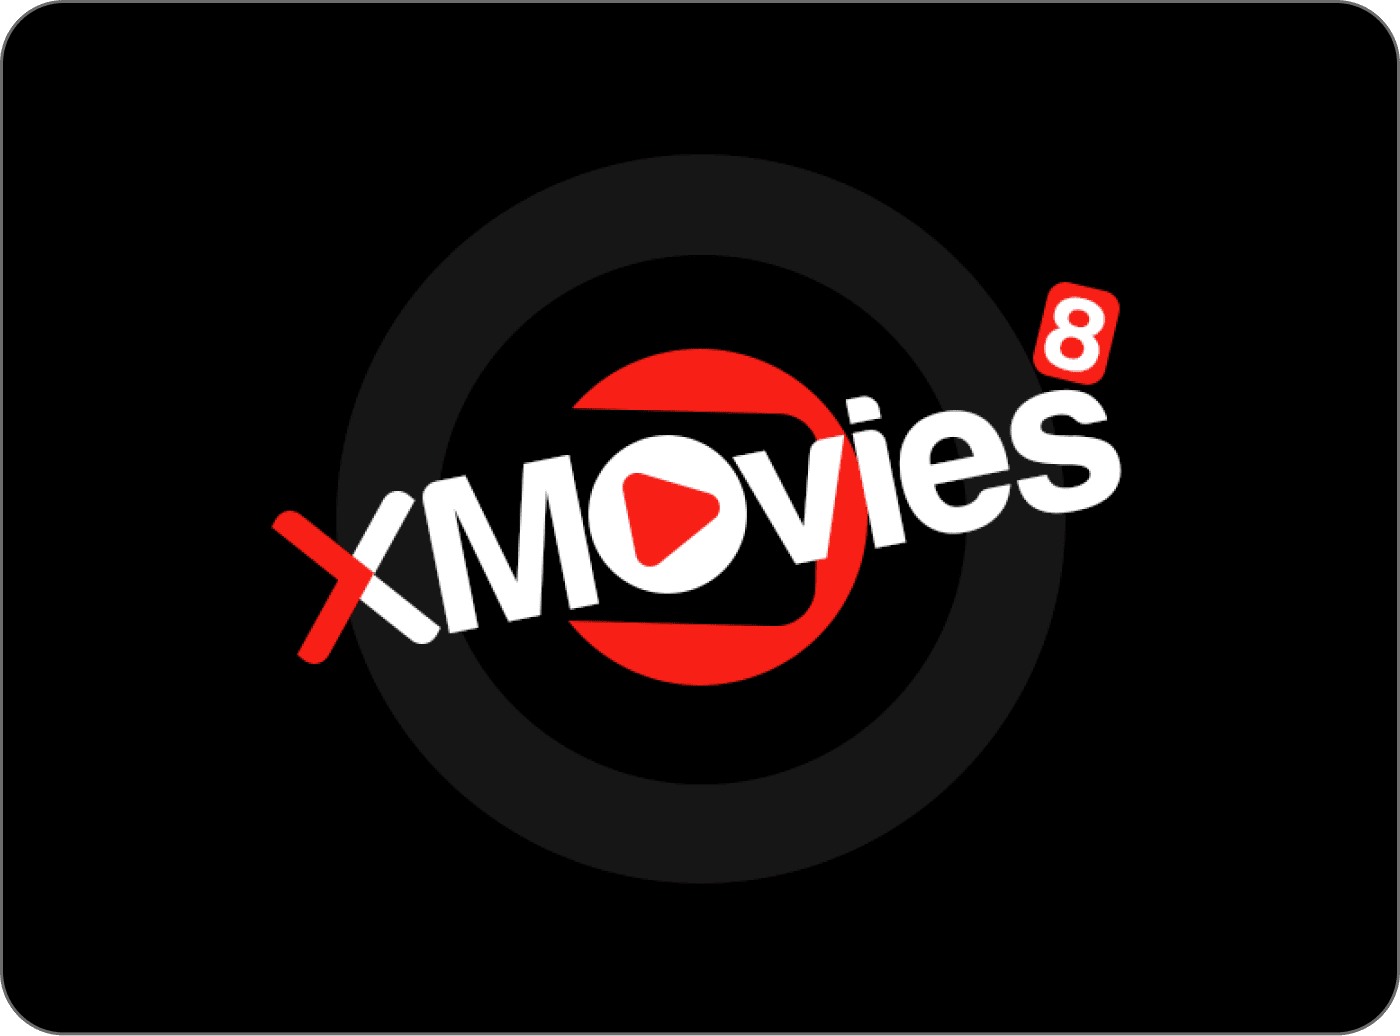 Xmovies8